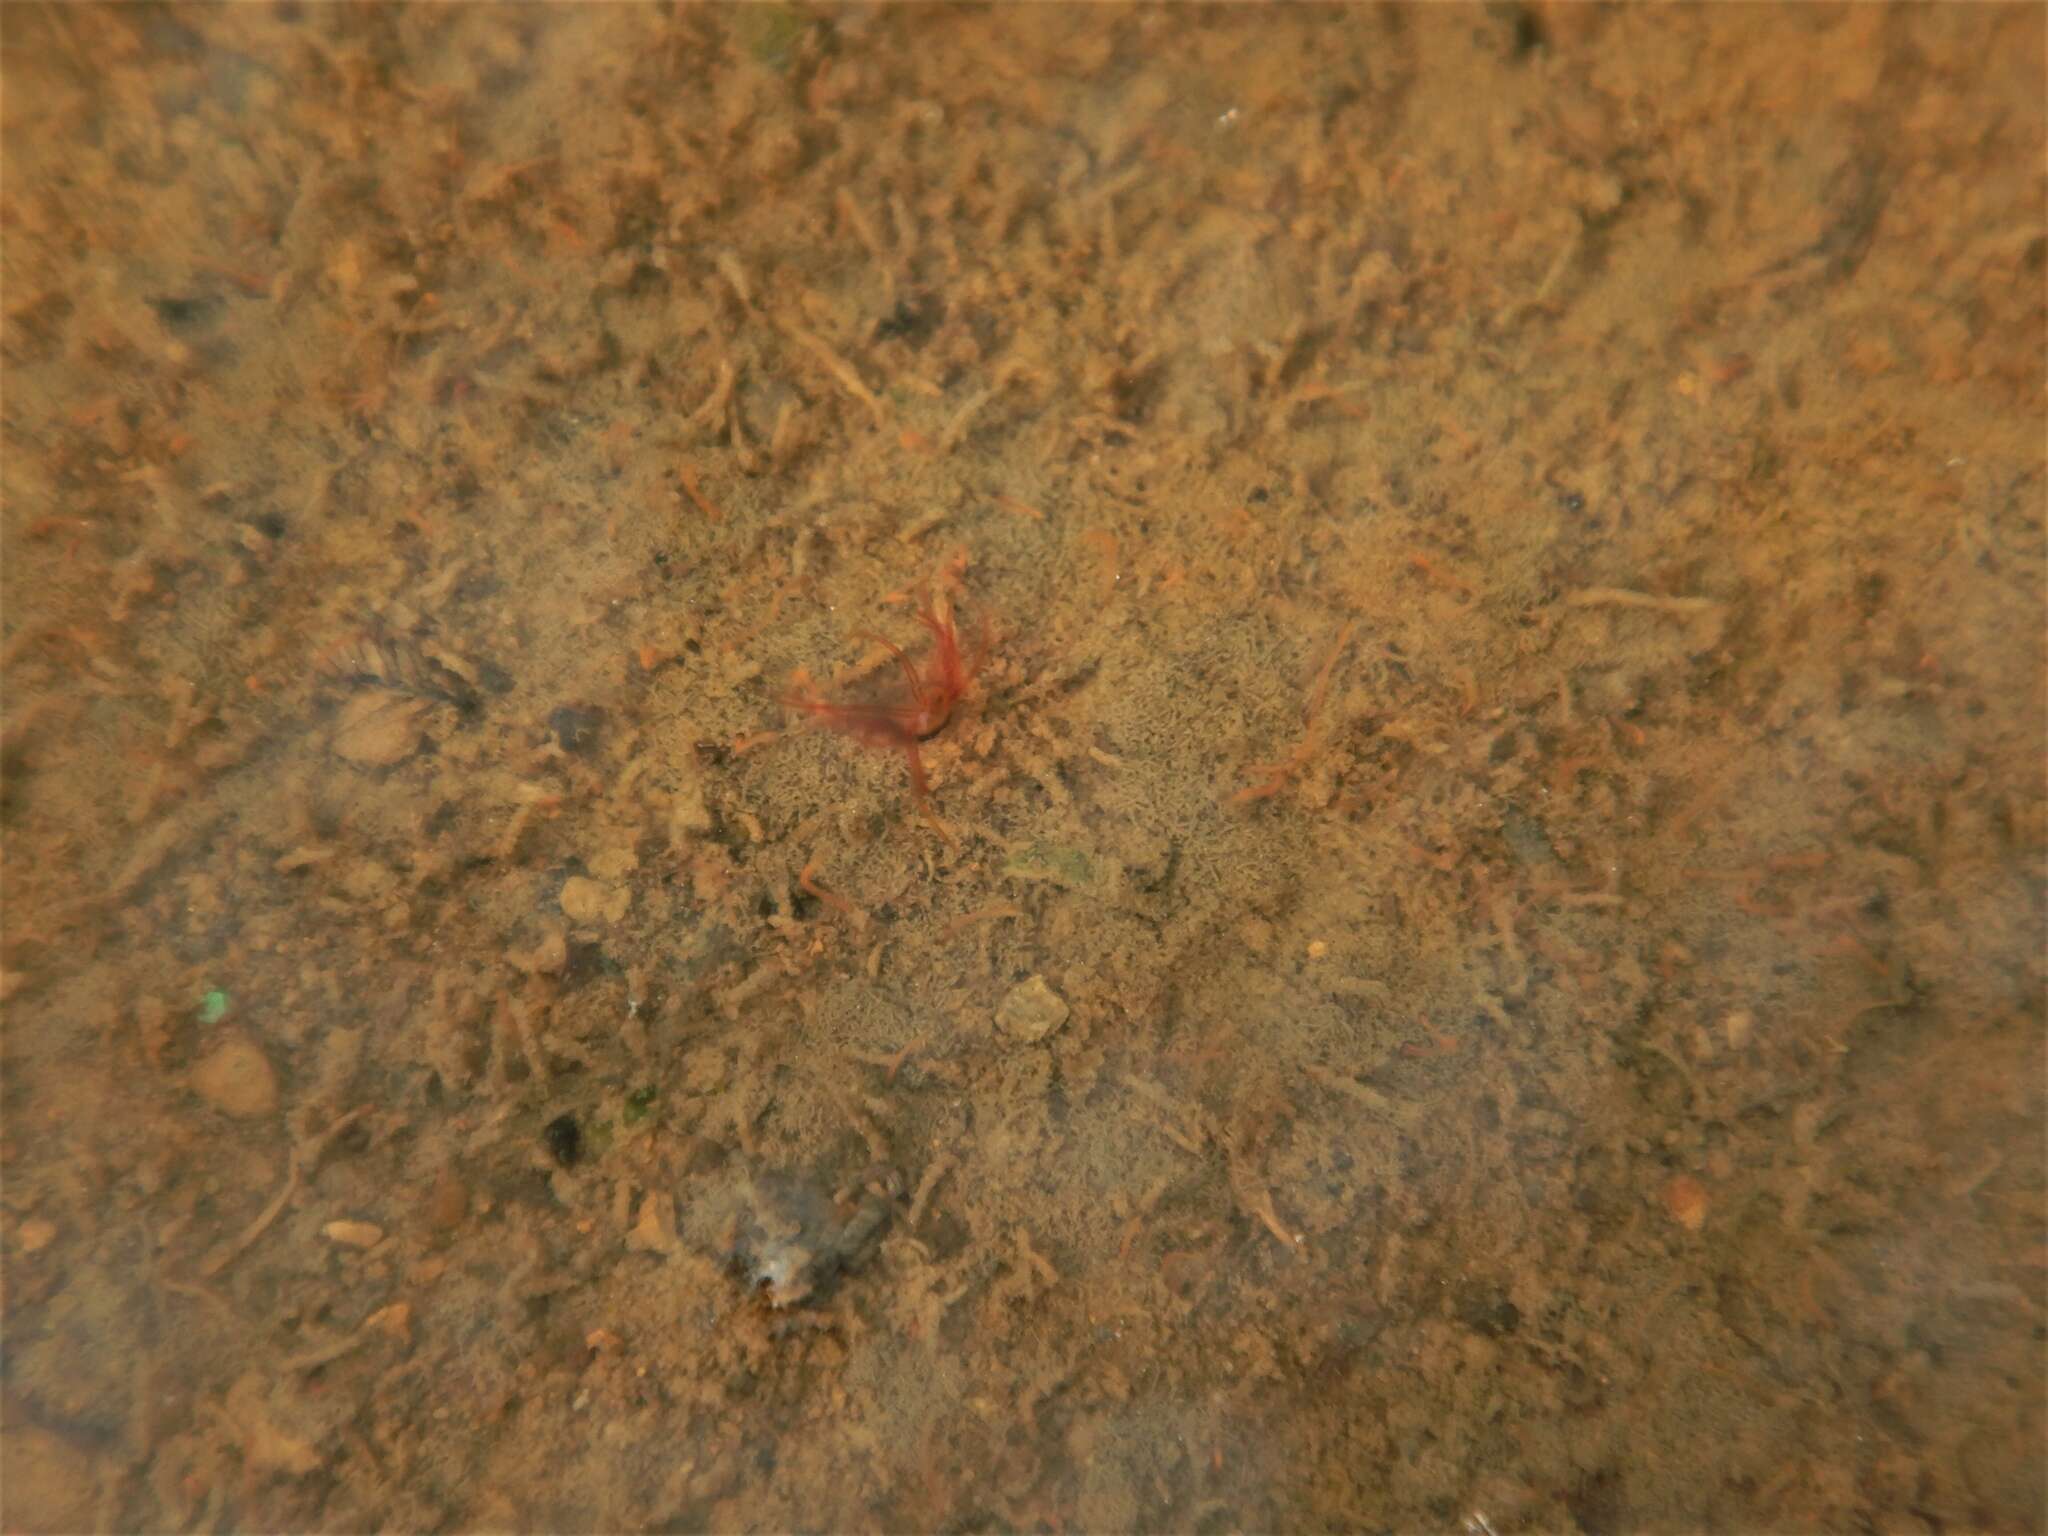 Image of Tubificid worm